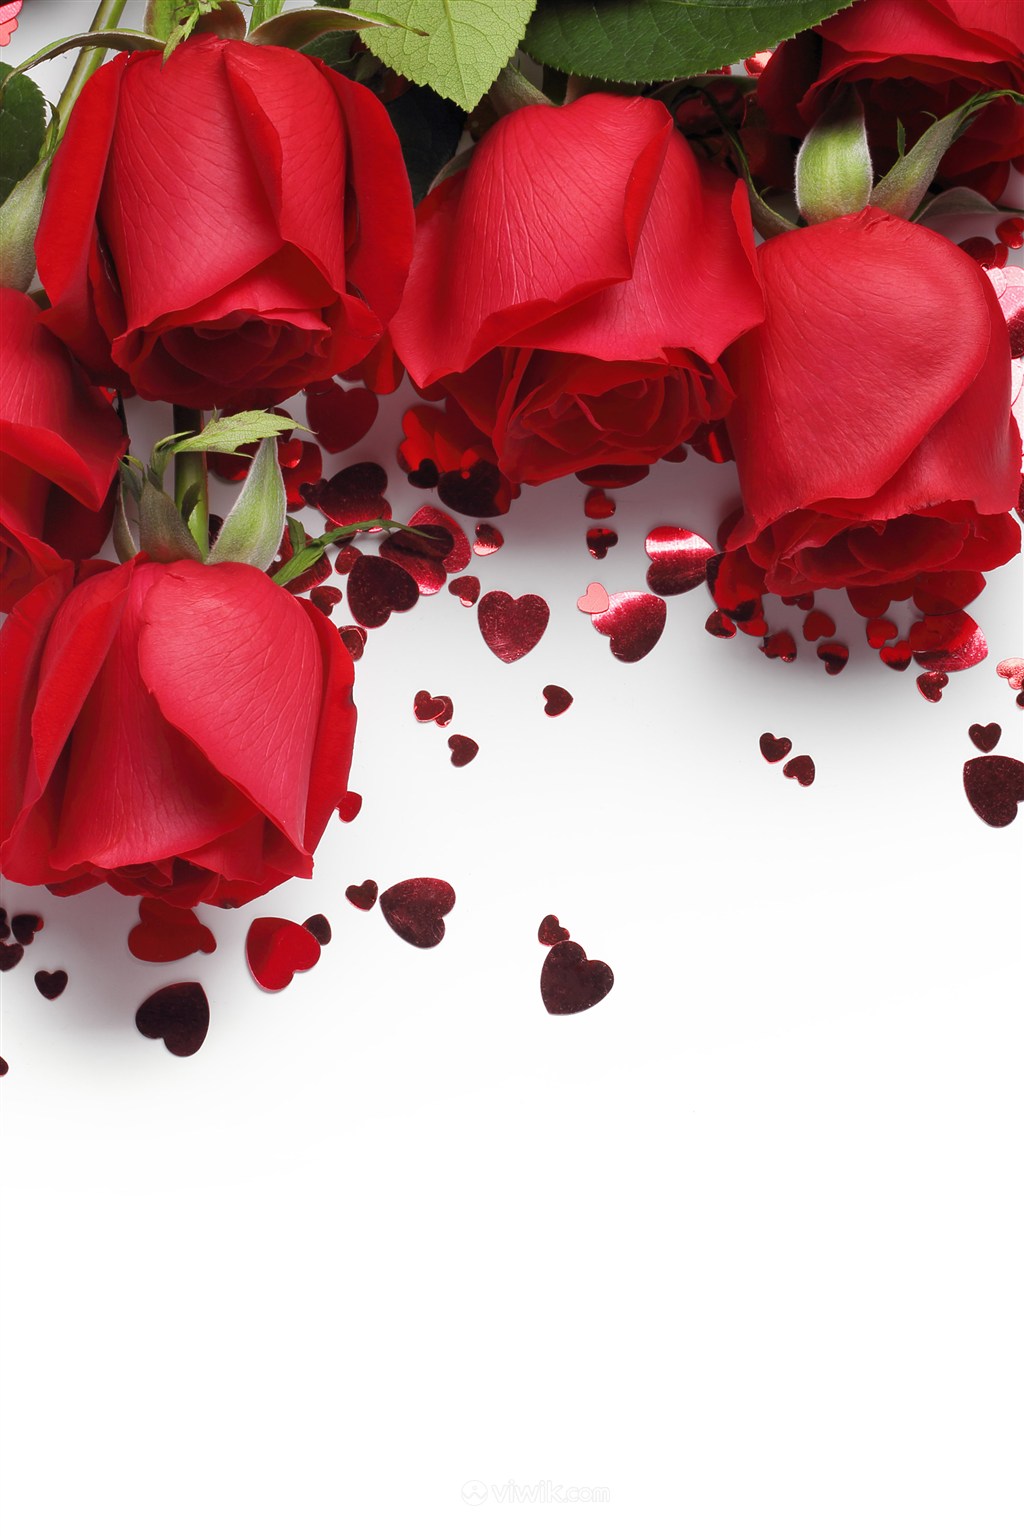 洒满心形碎片的红色玫瑰鲜花图片